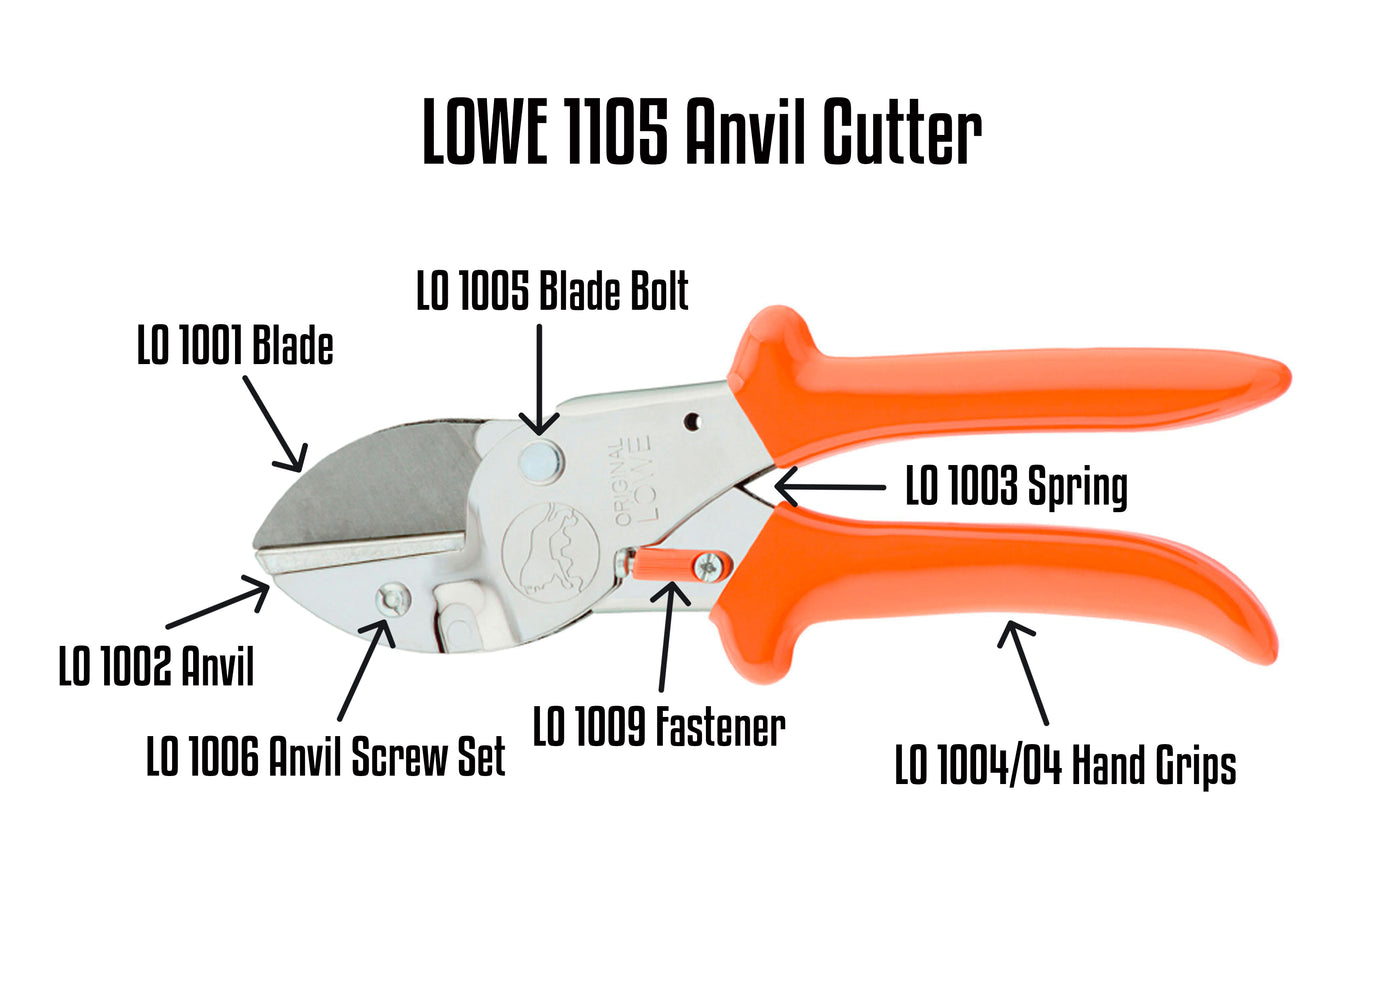 LO 1105 Anvil Cutter